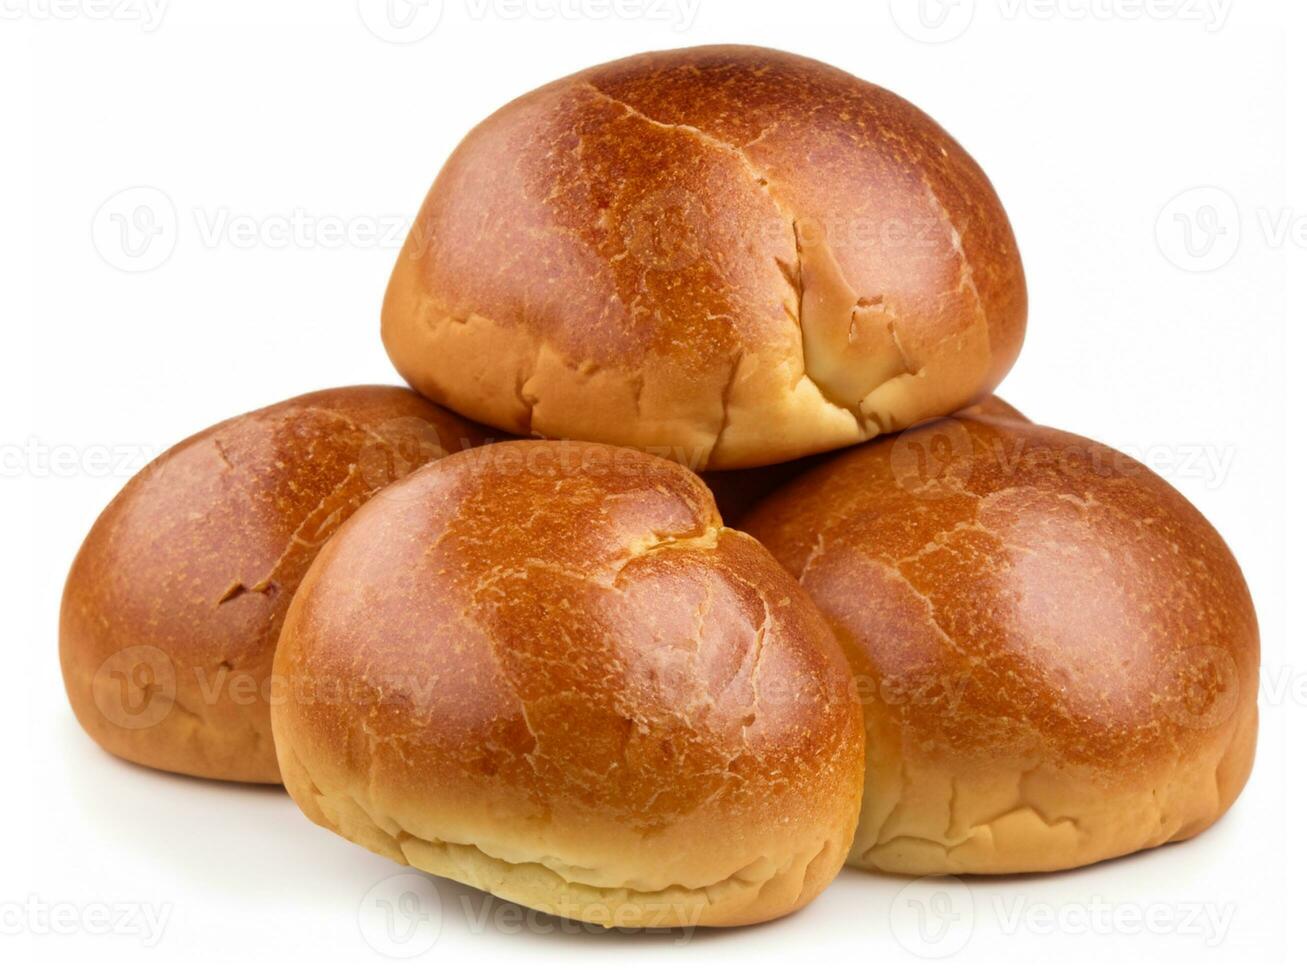 pão isolado no fundo branco foto